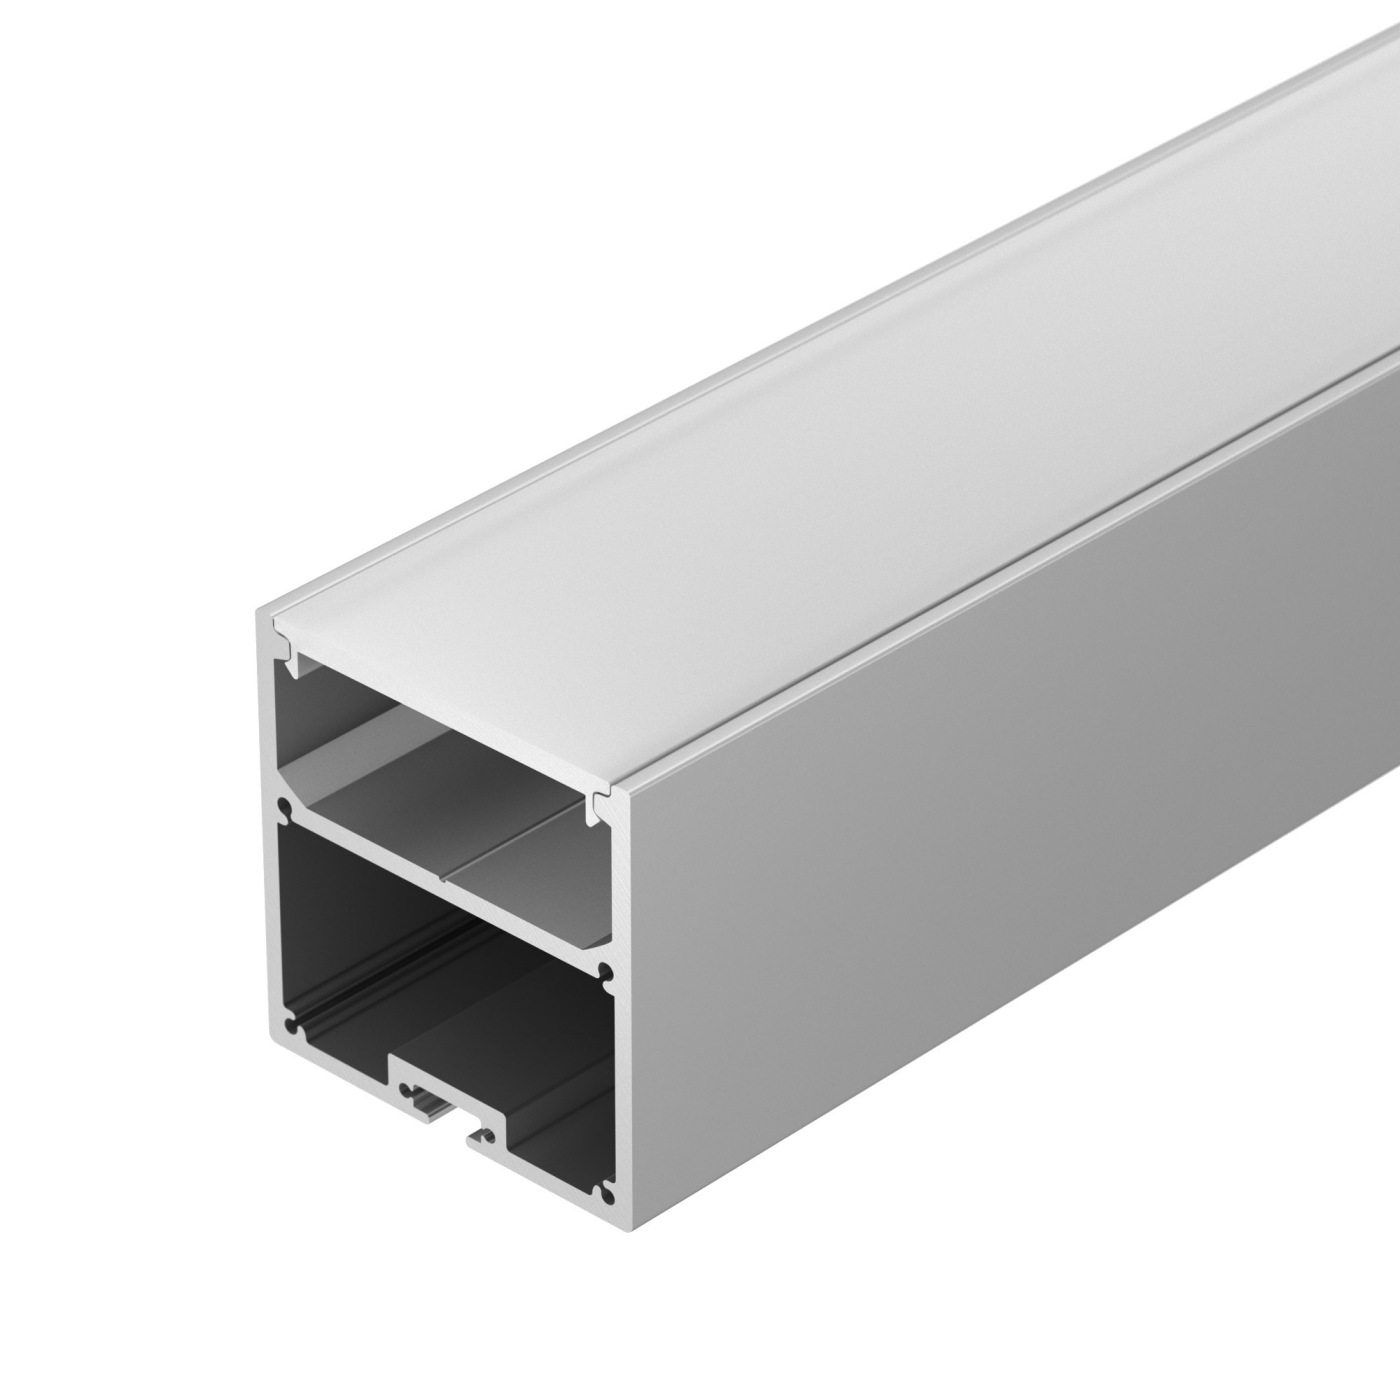 Профиль SL-LINE-5050-2000 ANOD профиль алюминиевый накладной подвесной с отсеком для бп серебро cab266